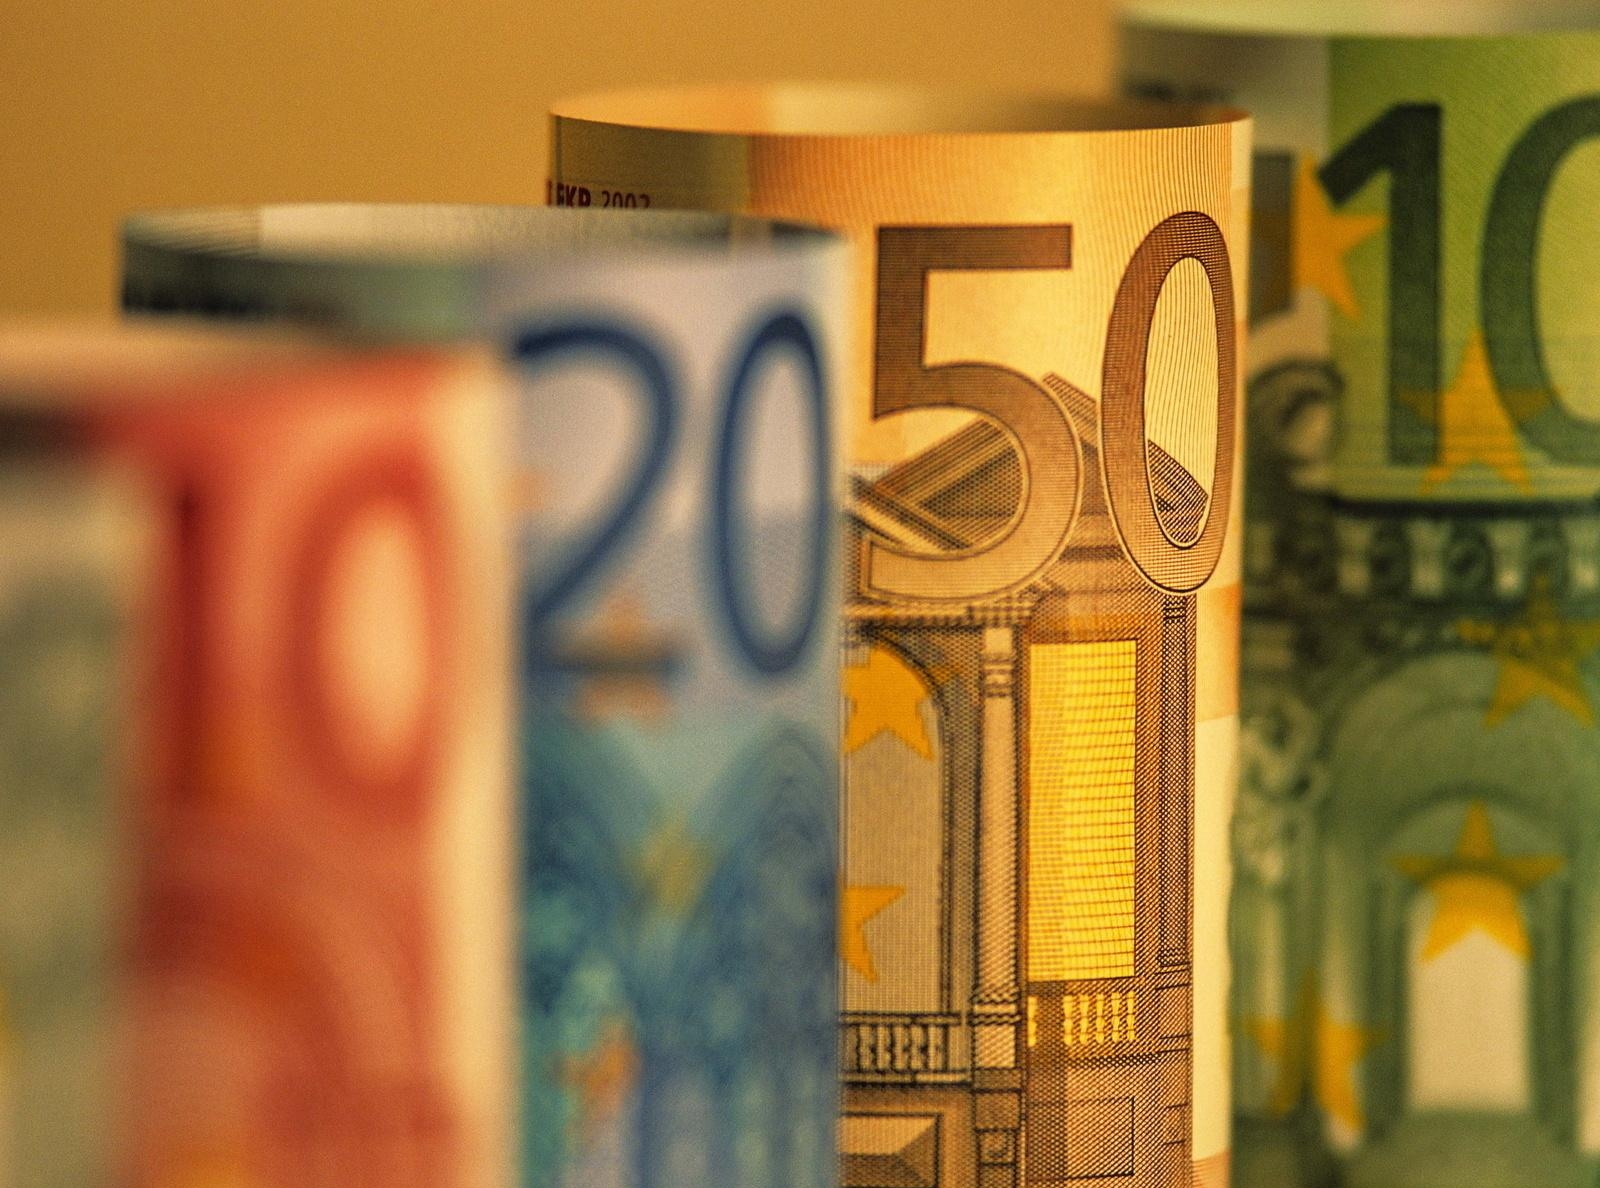 Евро - существующая валюта, завоевавшая место в валютной системе